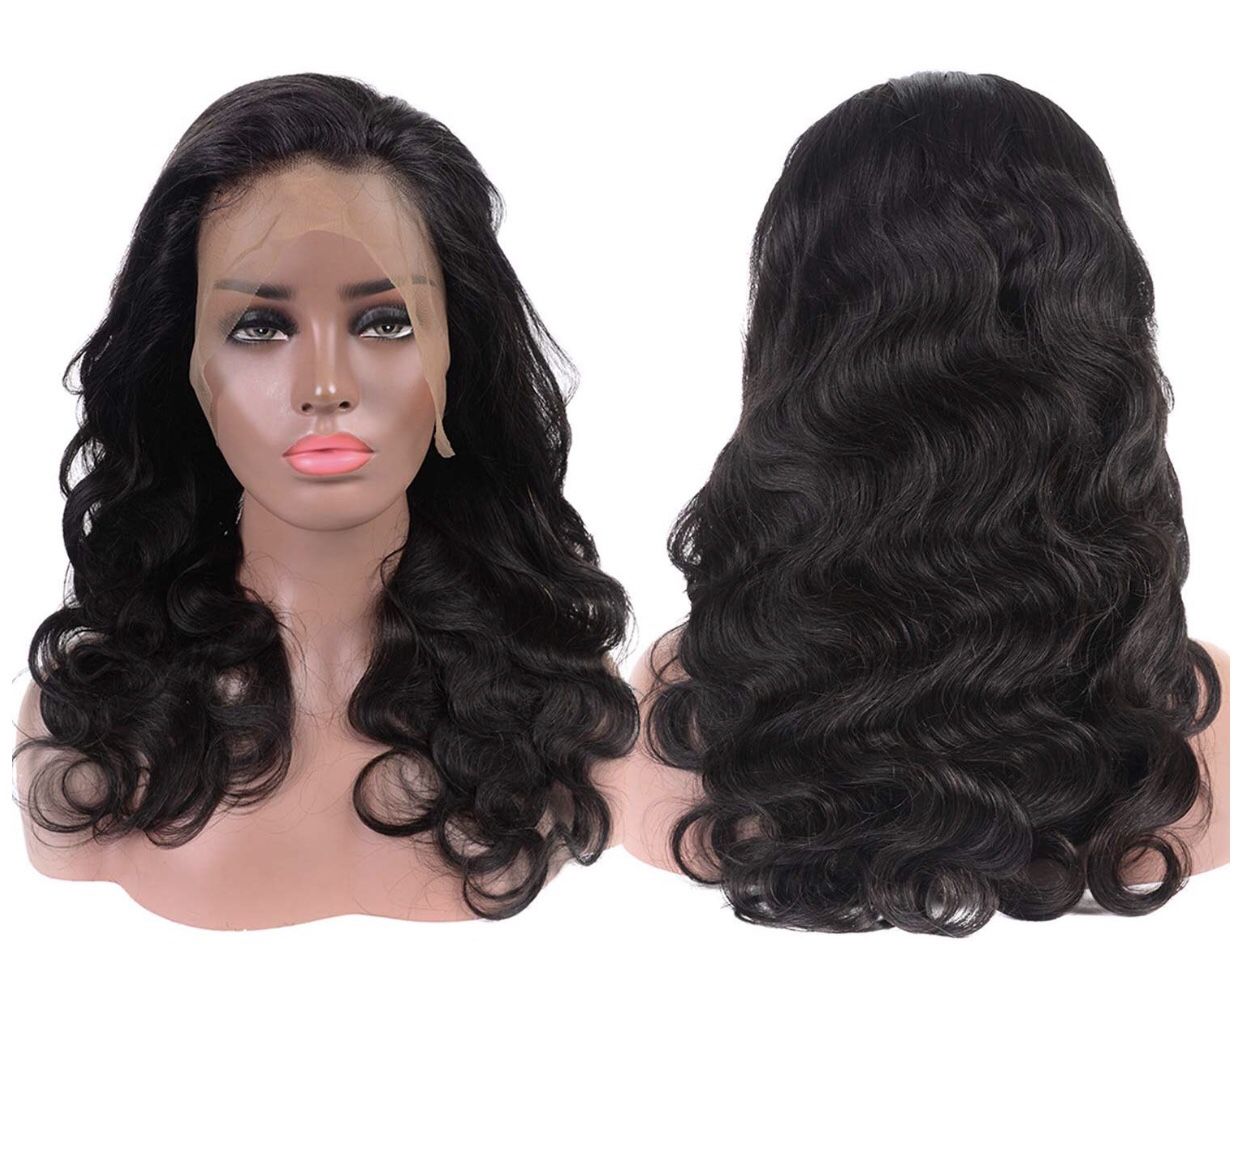 20” 360 Lace Frontal Wigs Human Hair Brazilian Body Wave Human Hair Wigs Natural Hairline Human Hair Lace Wigs 150% Density